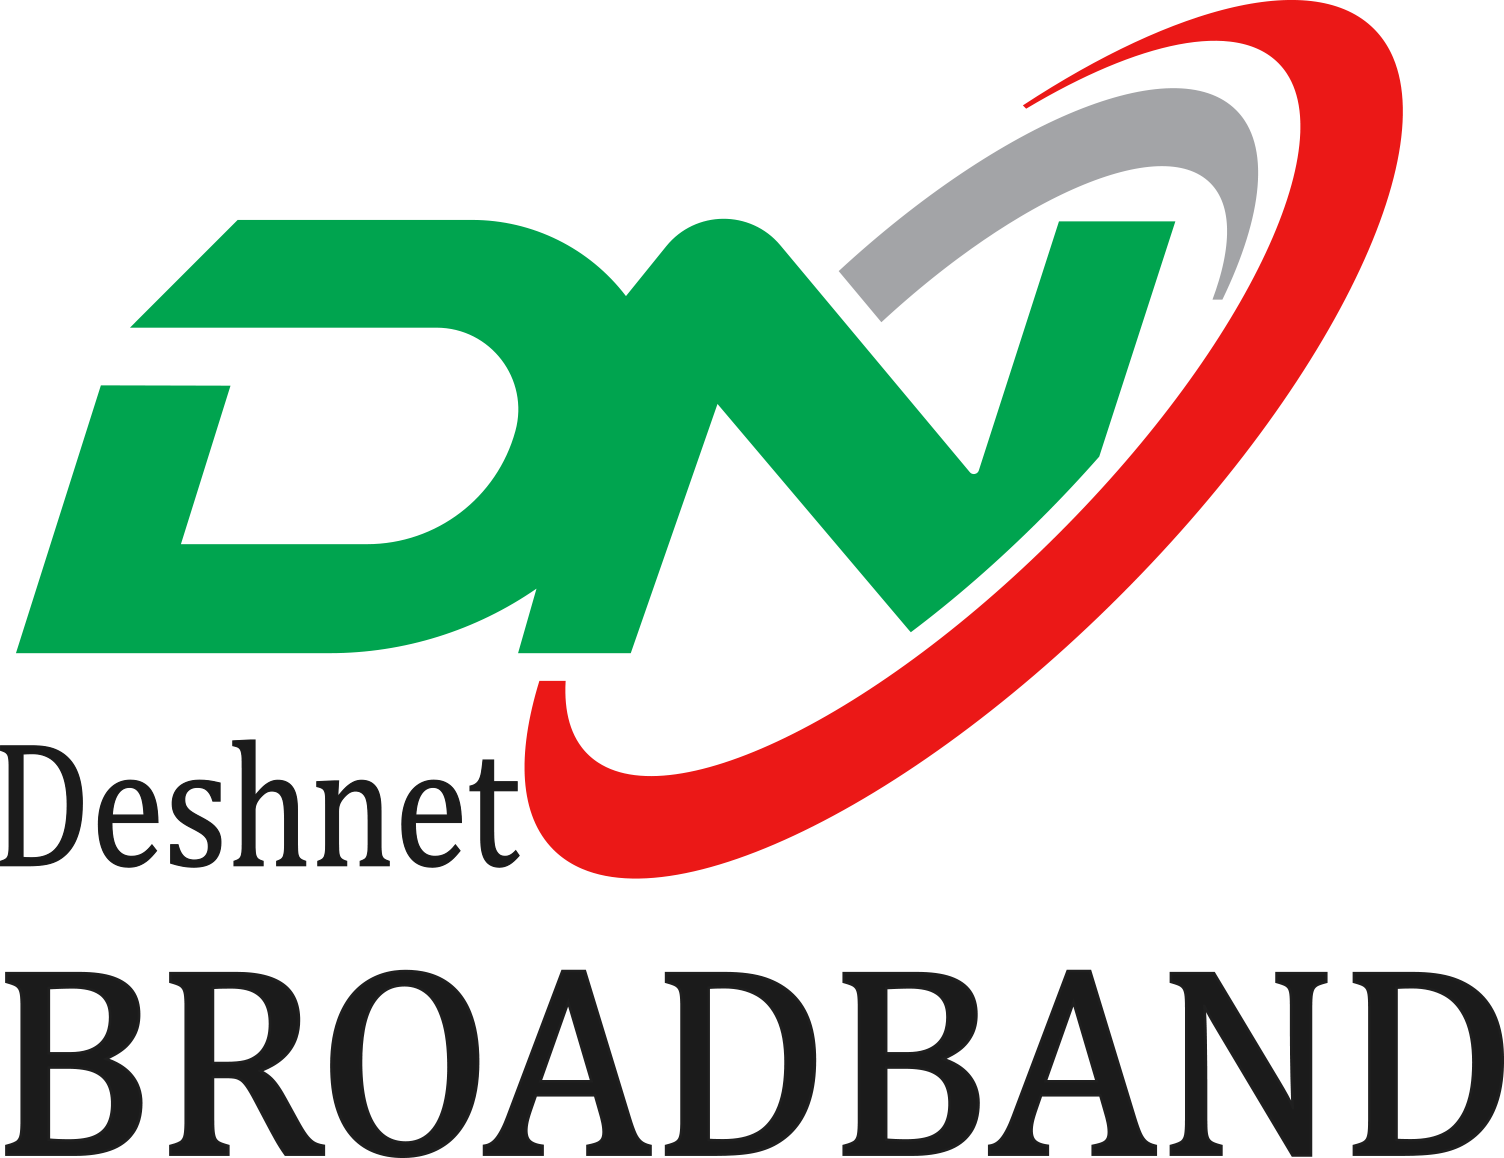 DESH NET BD-logo